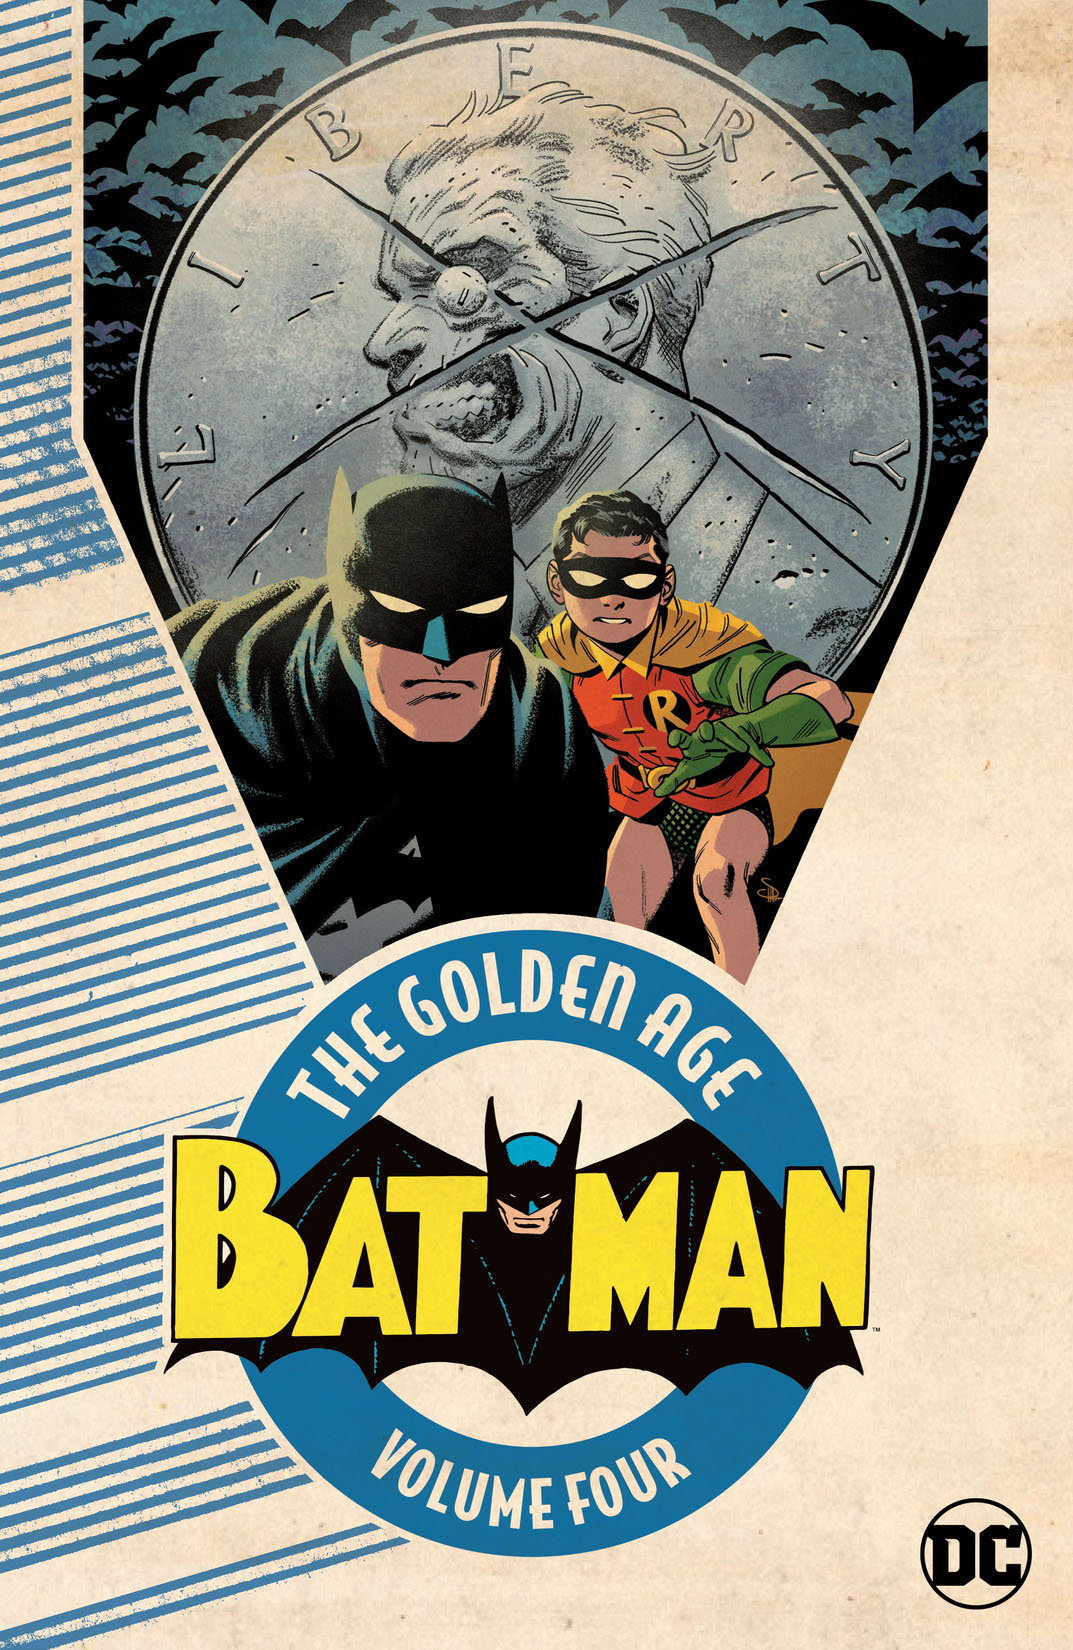 Batman: The Golden Age Vol. 4 preview images